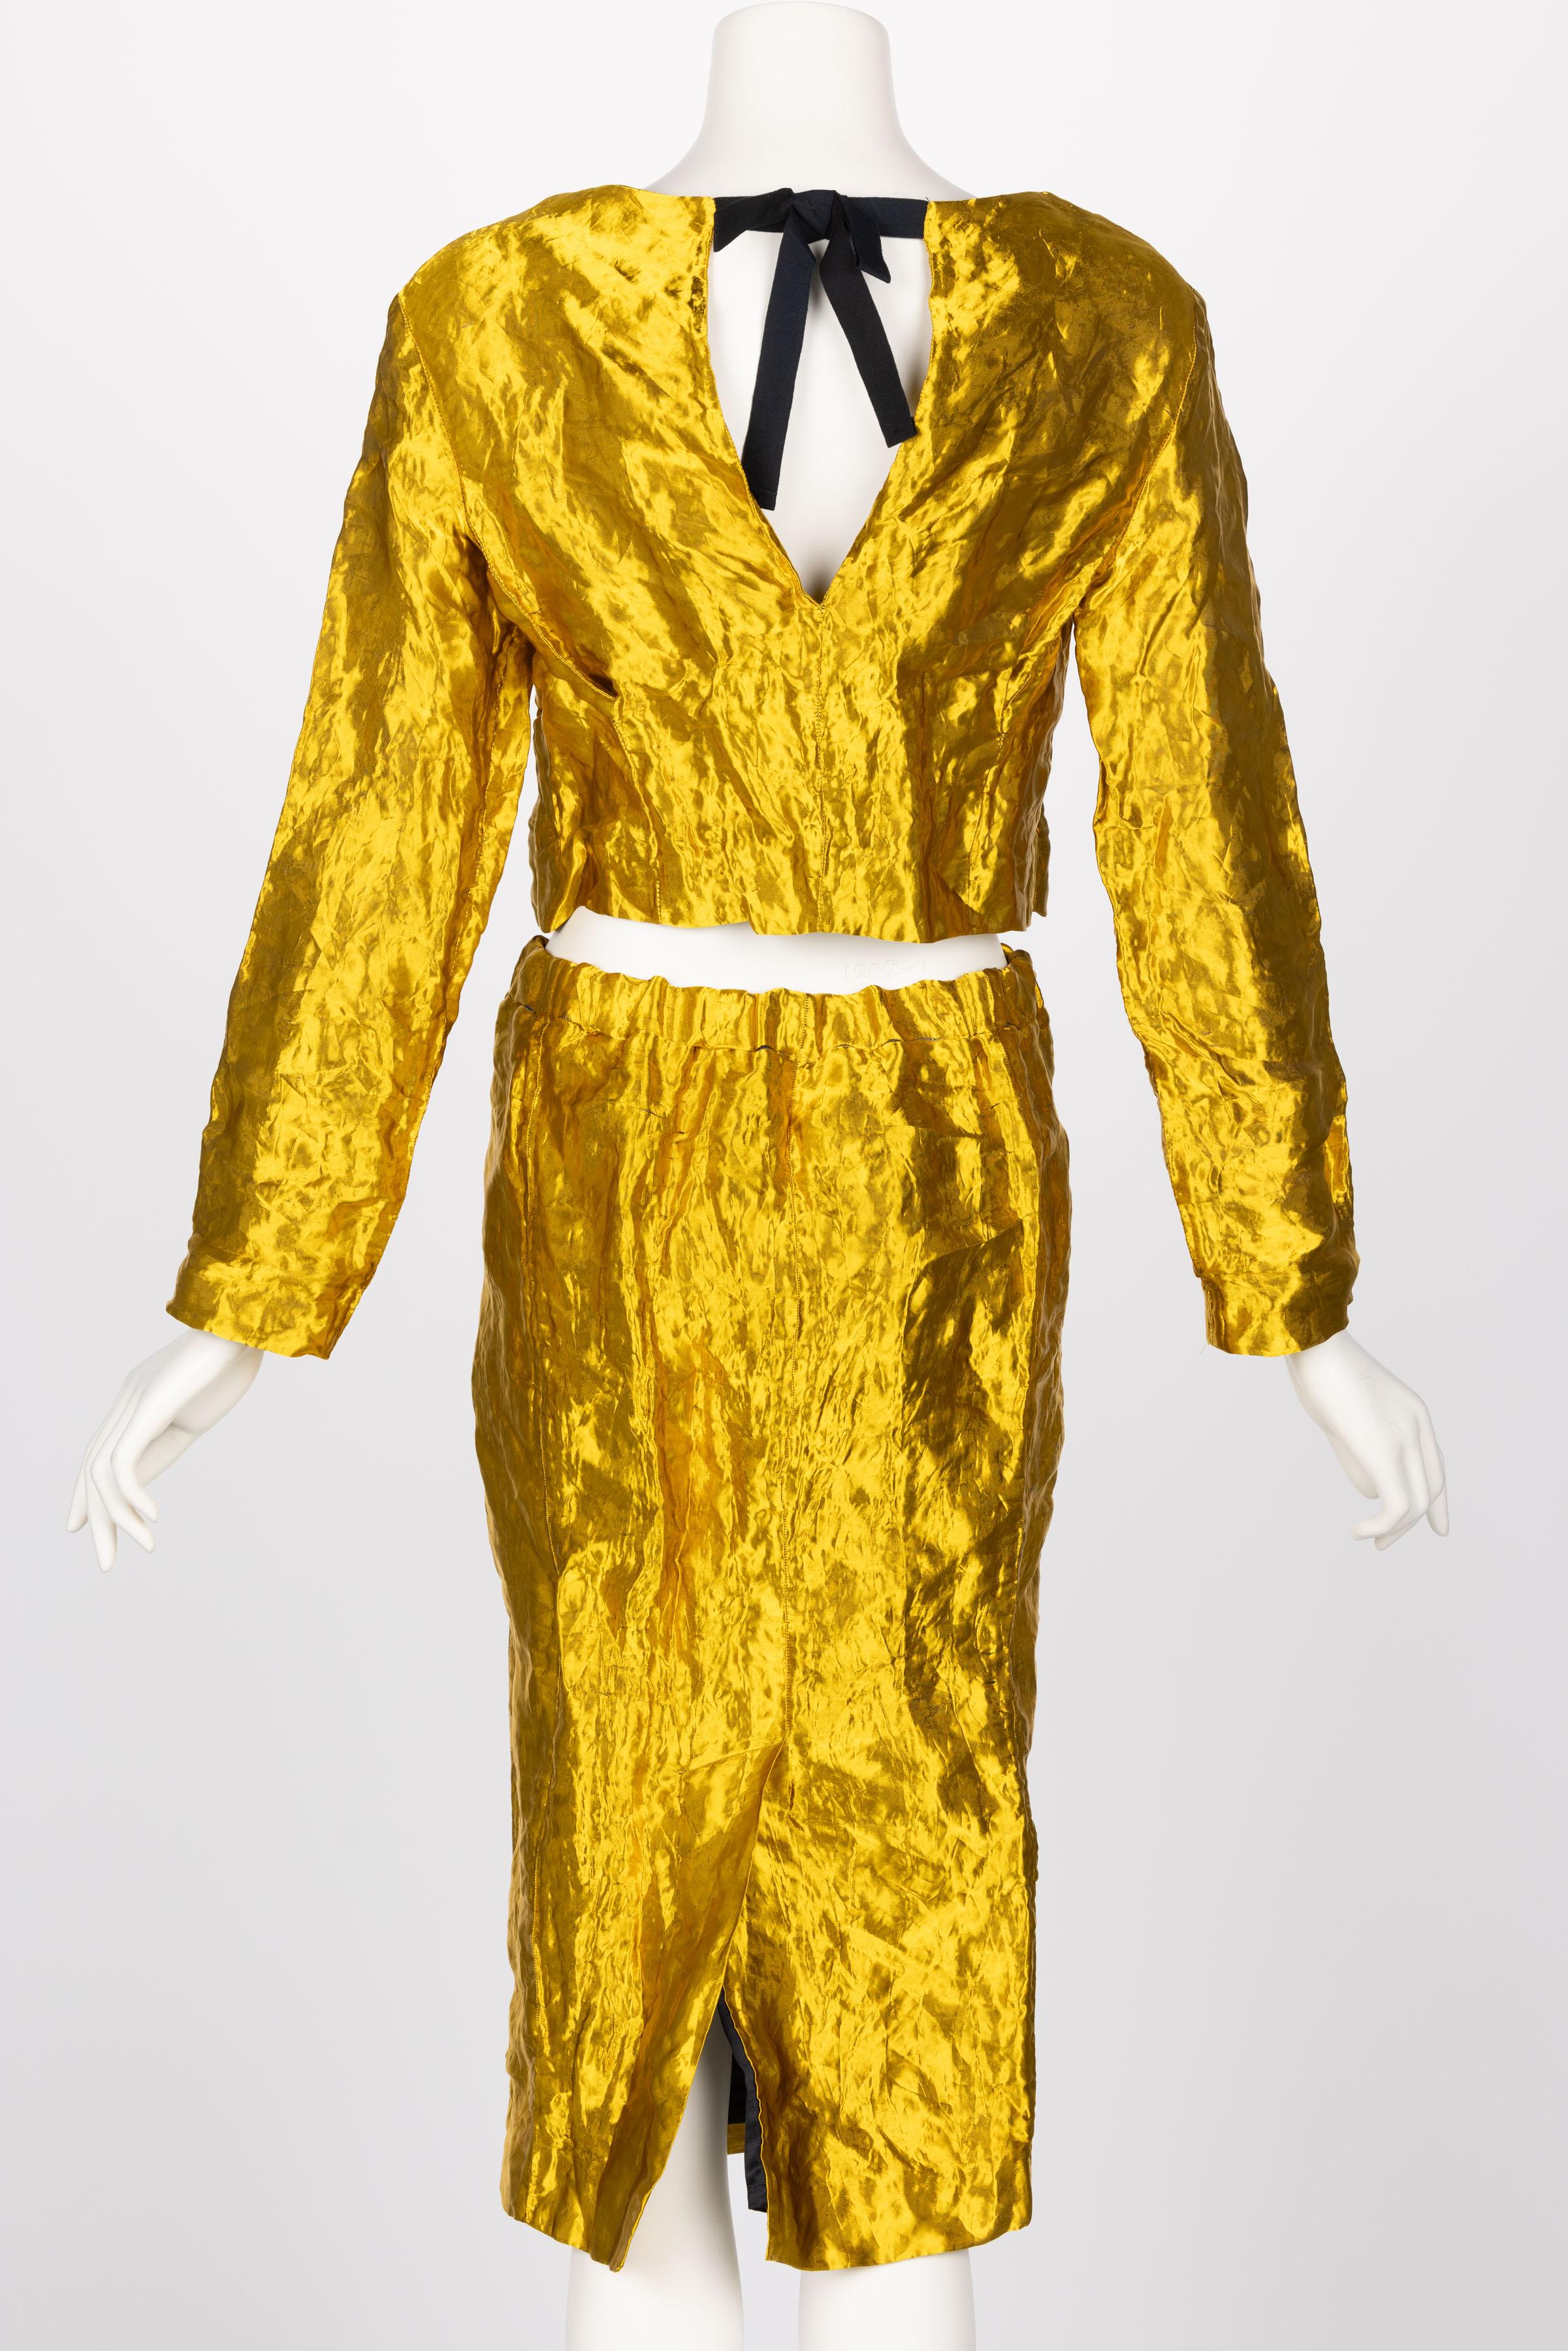 Prada - Ensemble veste et jupe en métal doré, printemps 2009 2